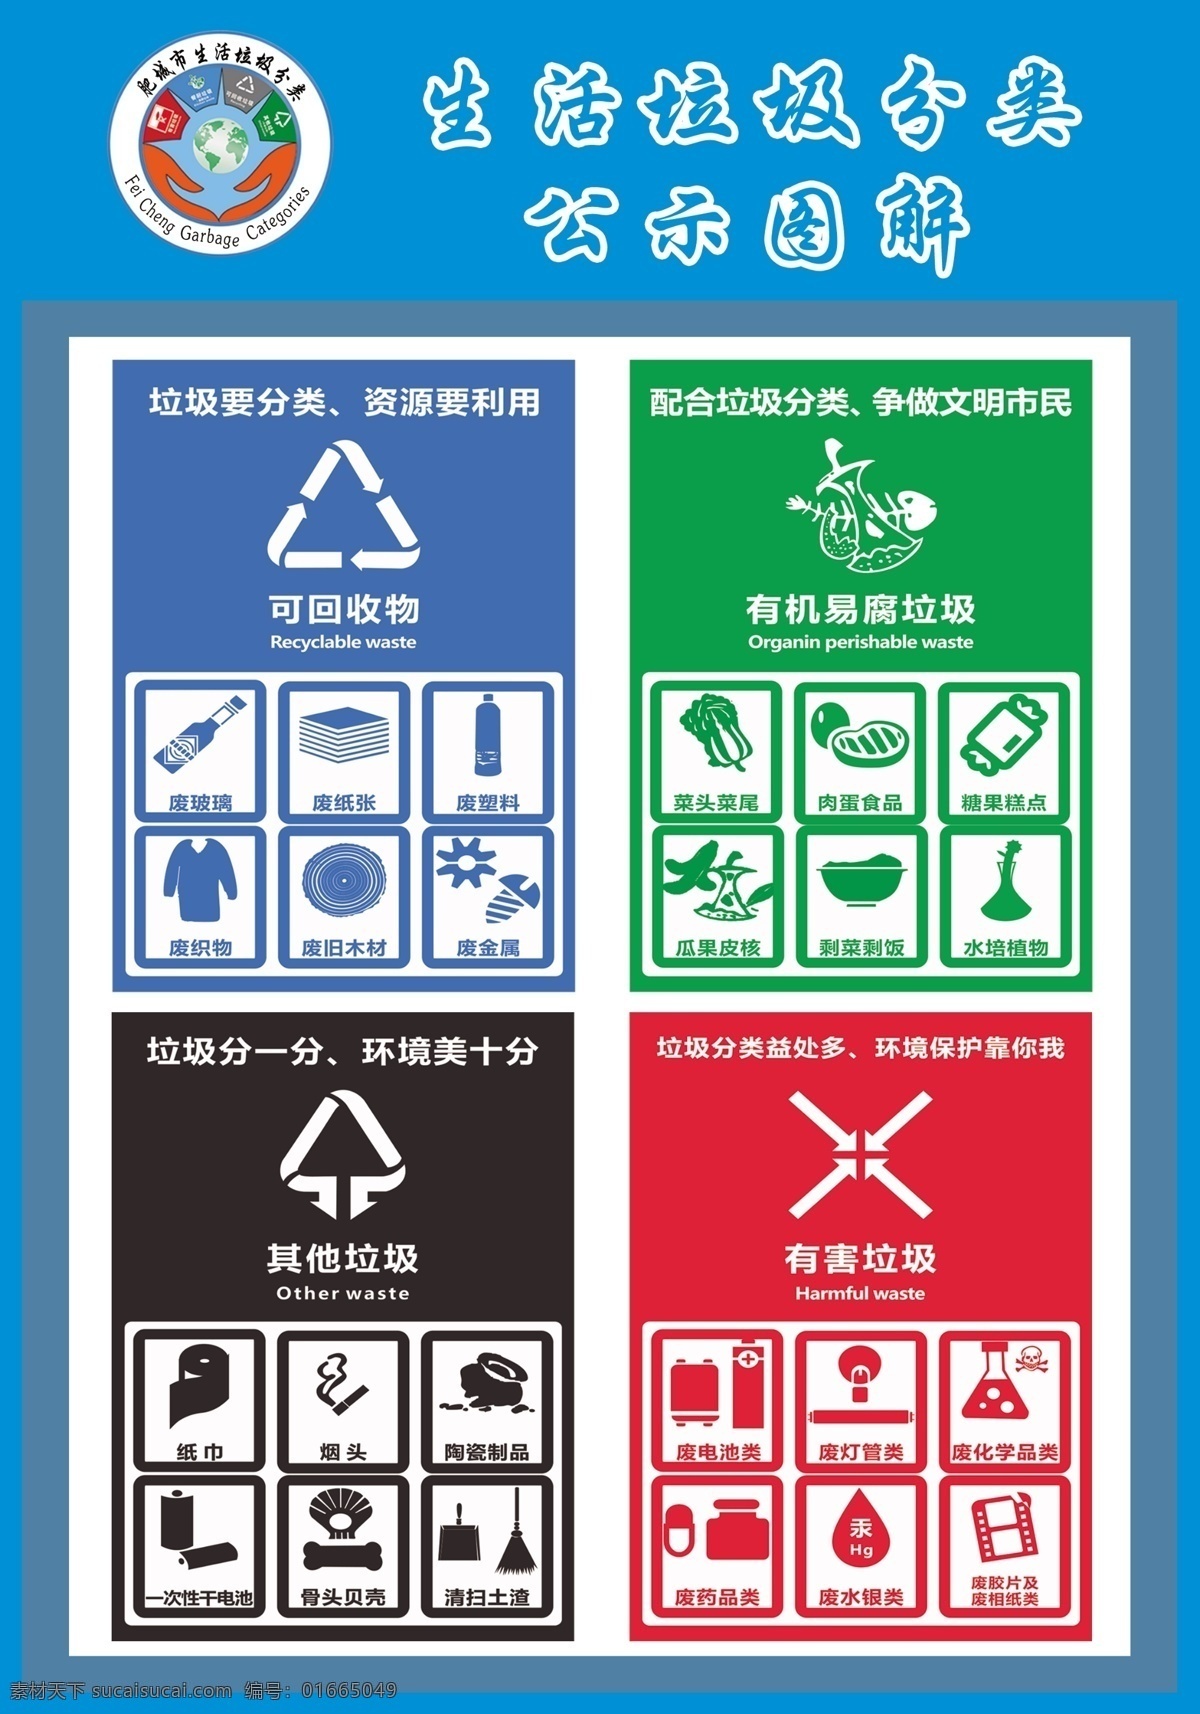 生活 垃圾 分类 公示 图解 分类公示图解 投放点 公示牌 生活垃圾 责任告知书 标志 责任人